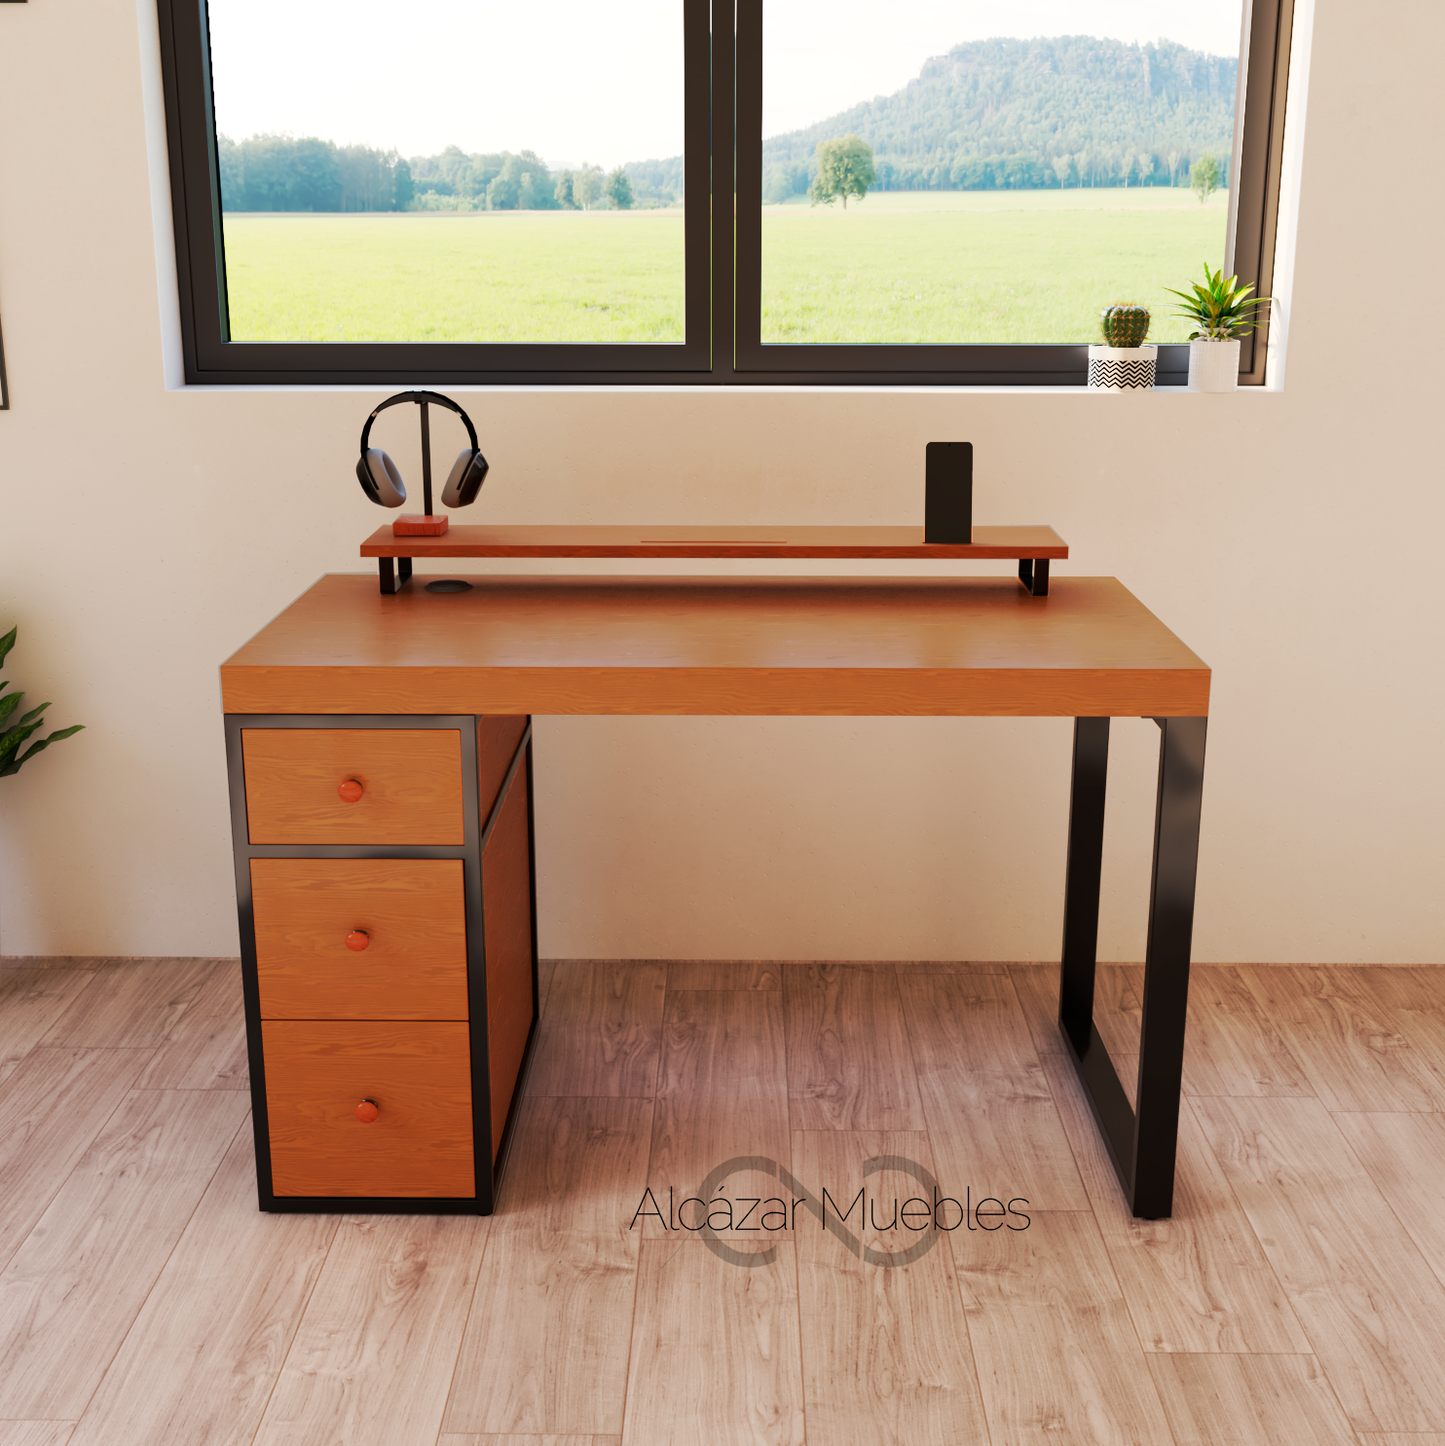 Minimalista escritorio gamer. 120 cm de largo con 6 cajones de madera y 1 repisa superior. Color cedro